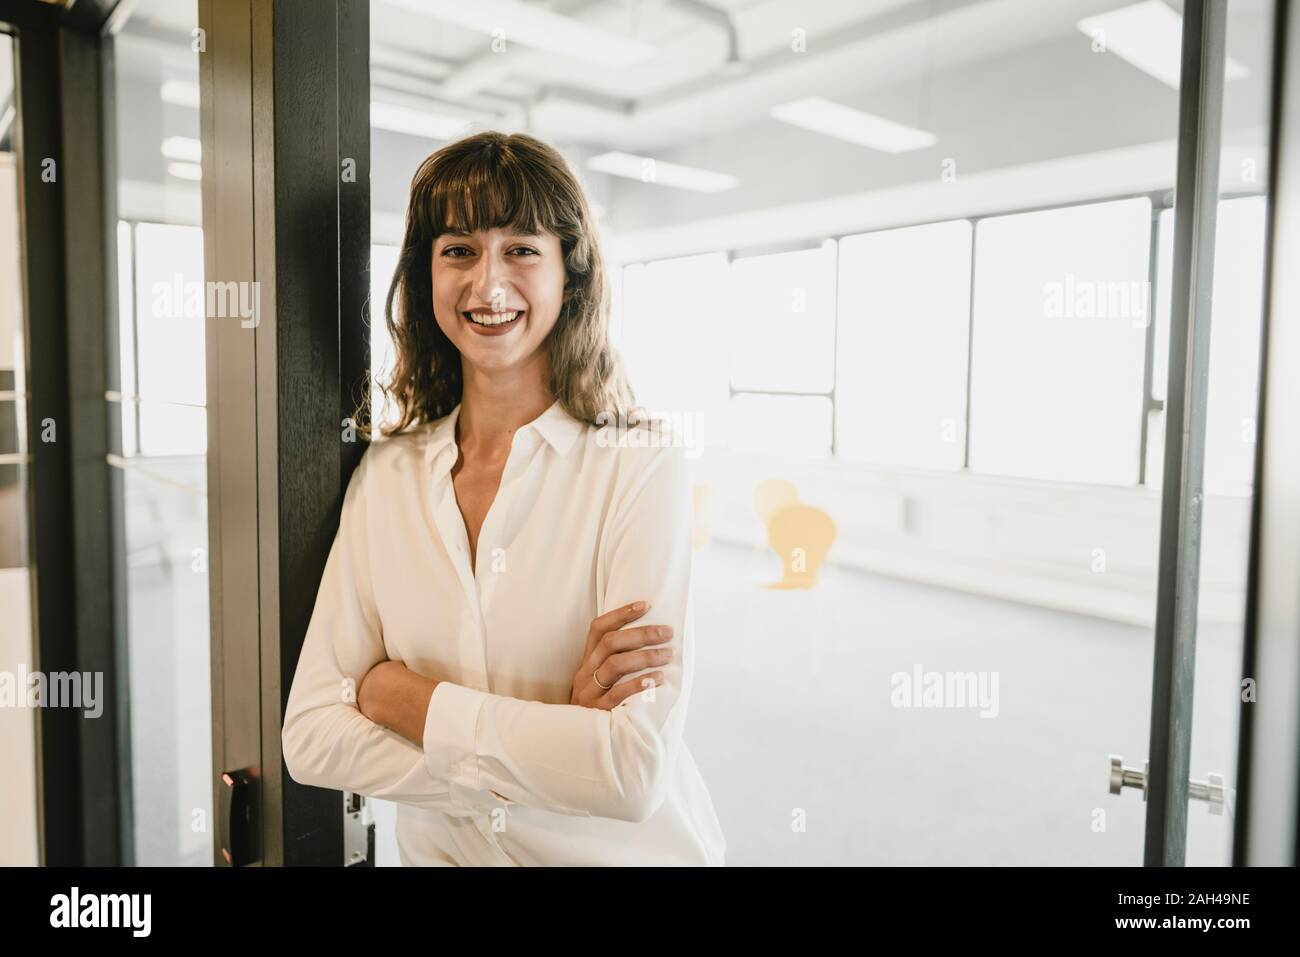 Smiling businesswoman standing dans une porte de bureau Banque D'Images